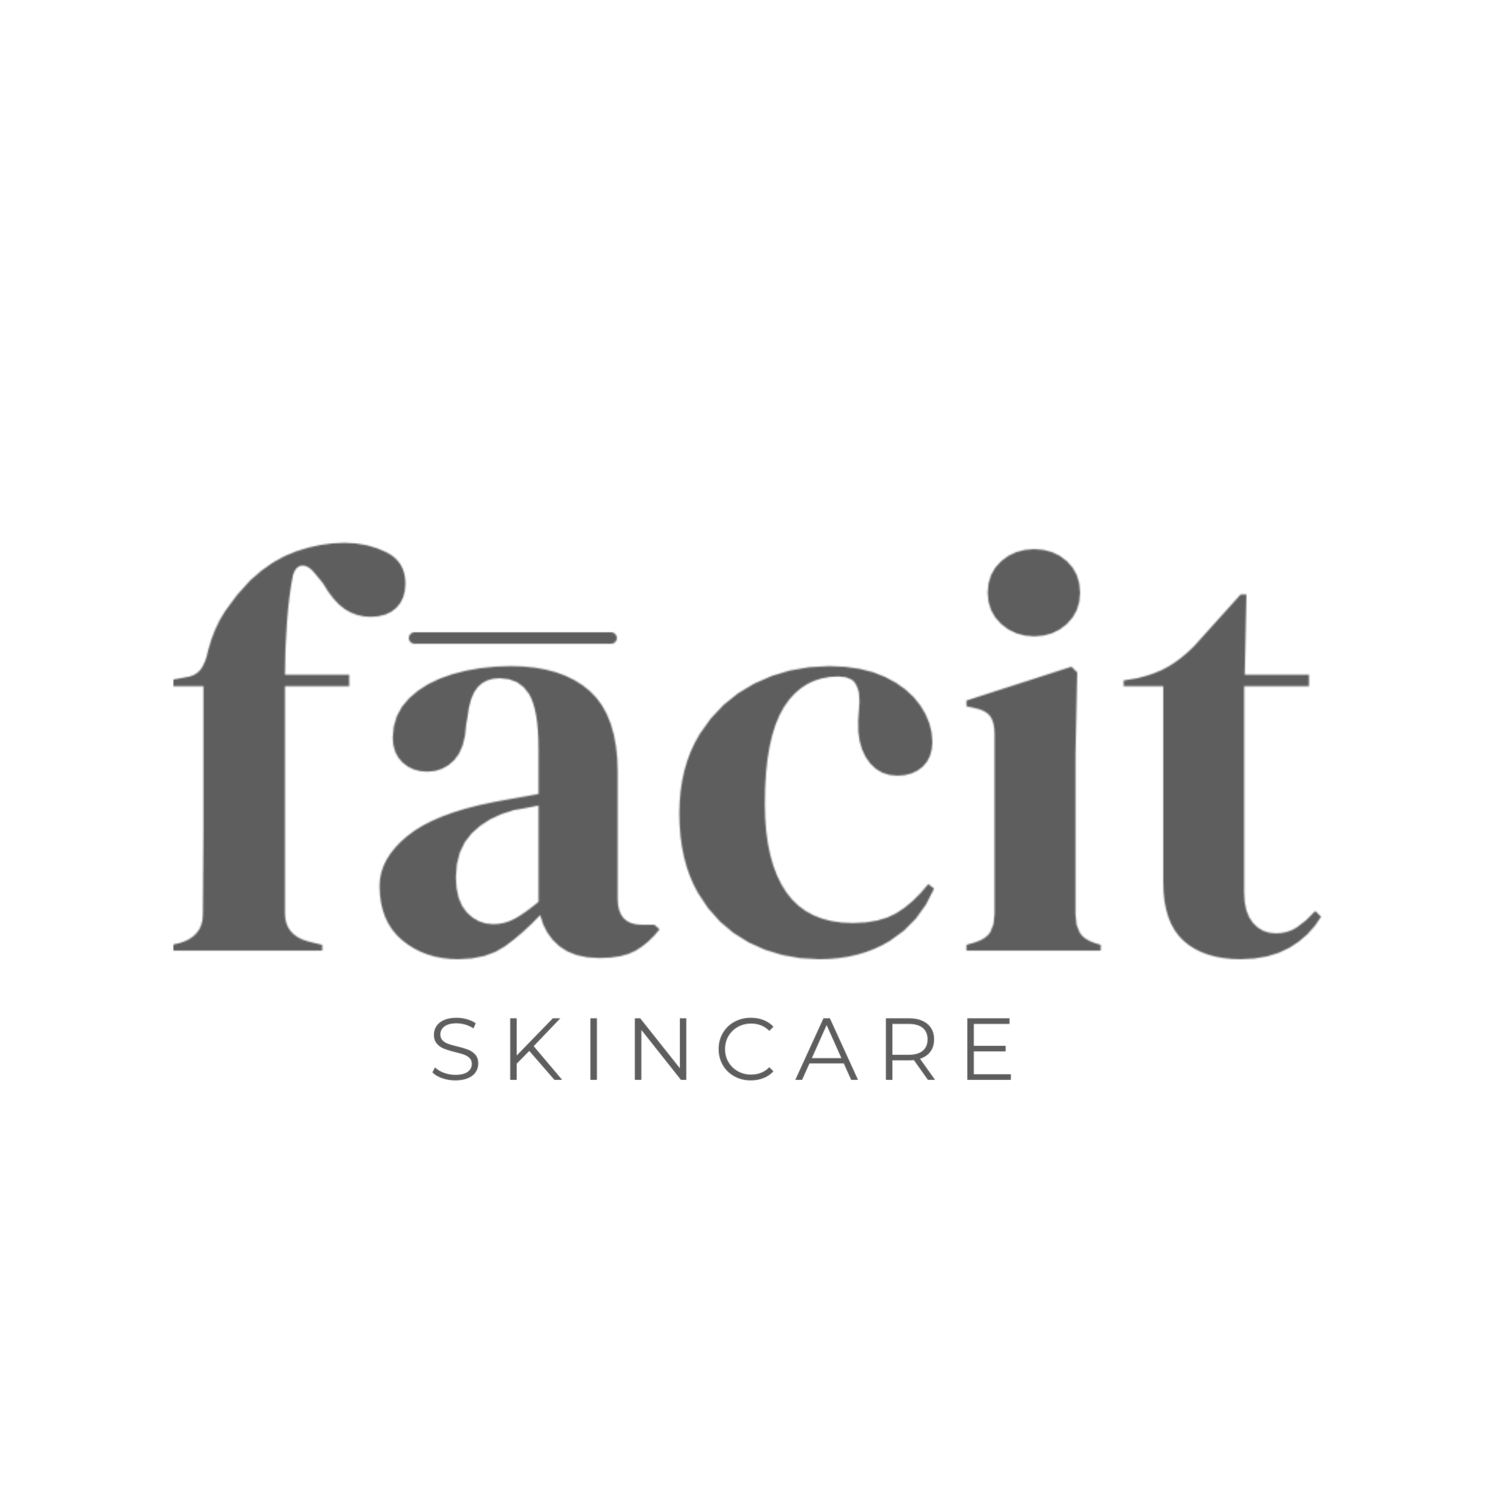 Effective & Affordable Skincare -Fācit